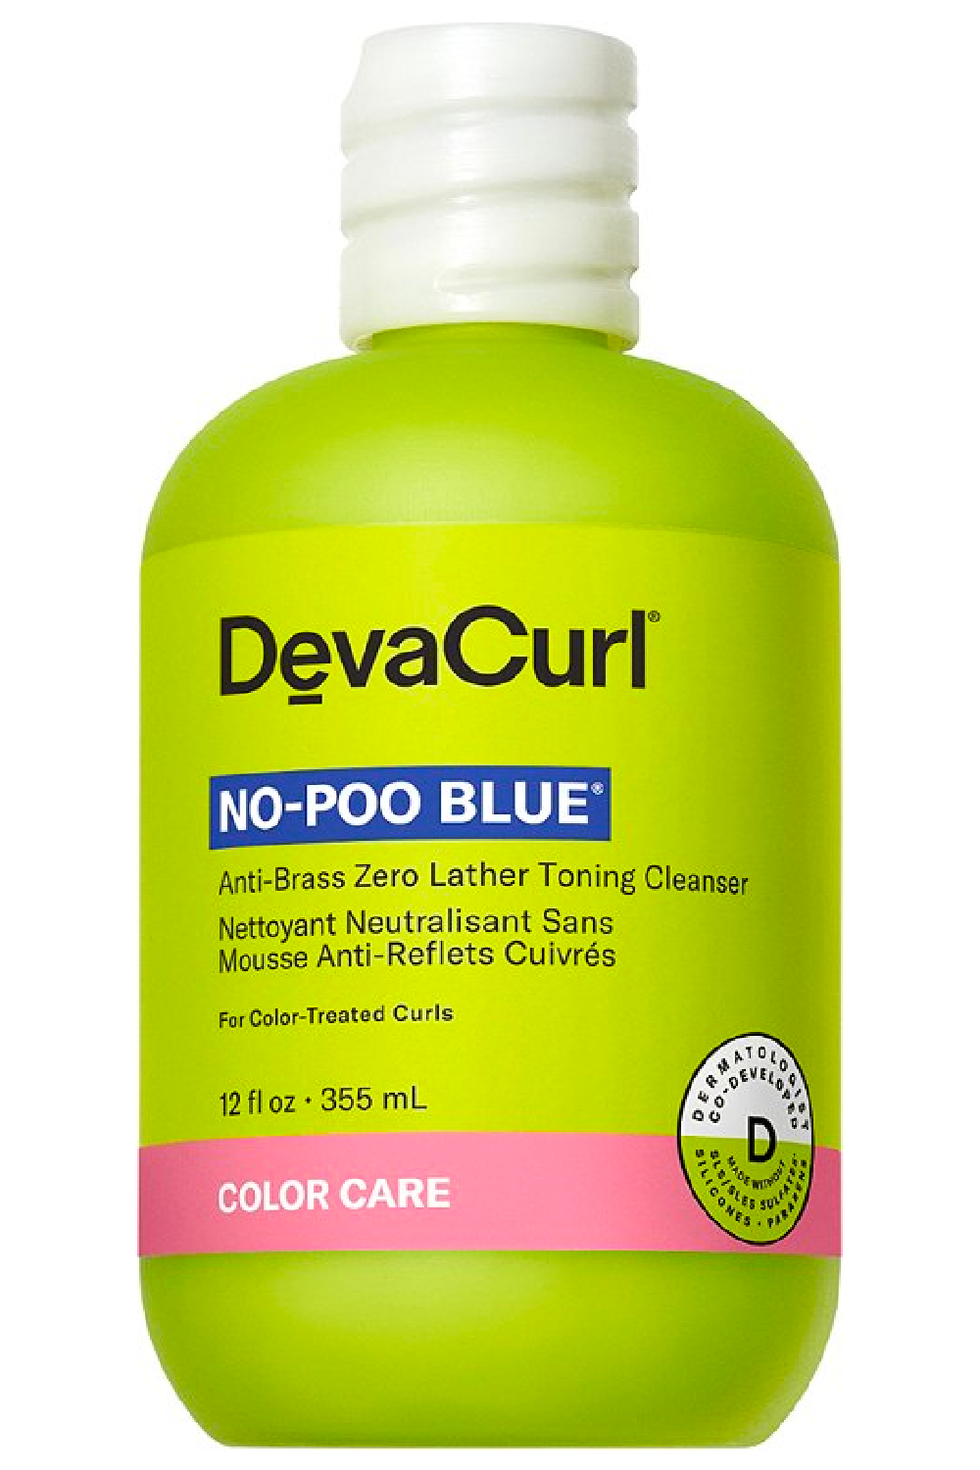 DevaCurl No-Poo Blue Anti-Brass Zero Lather Toning